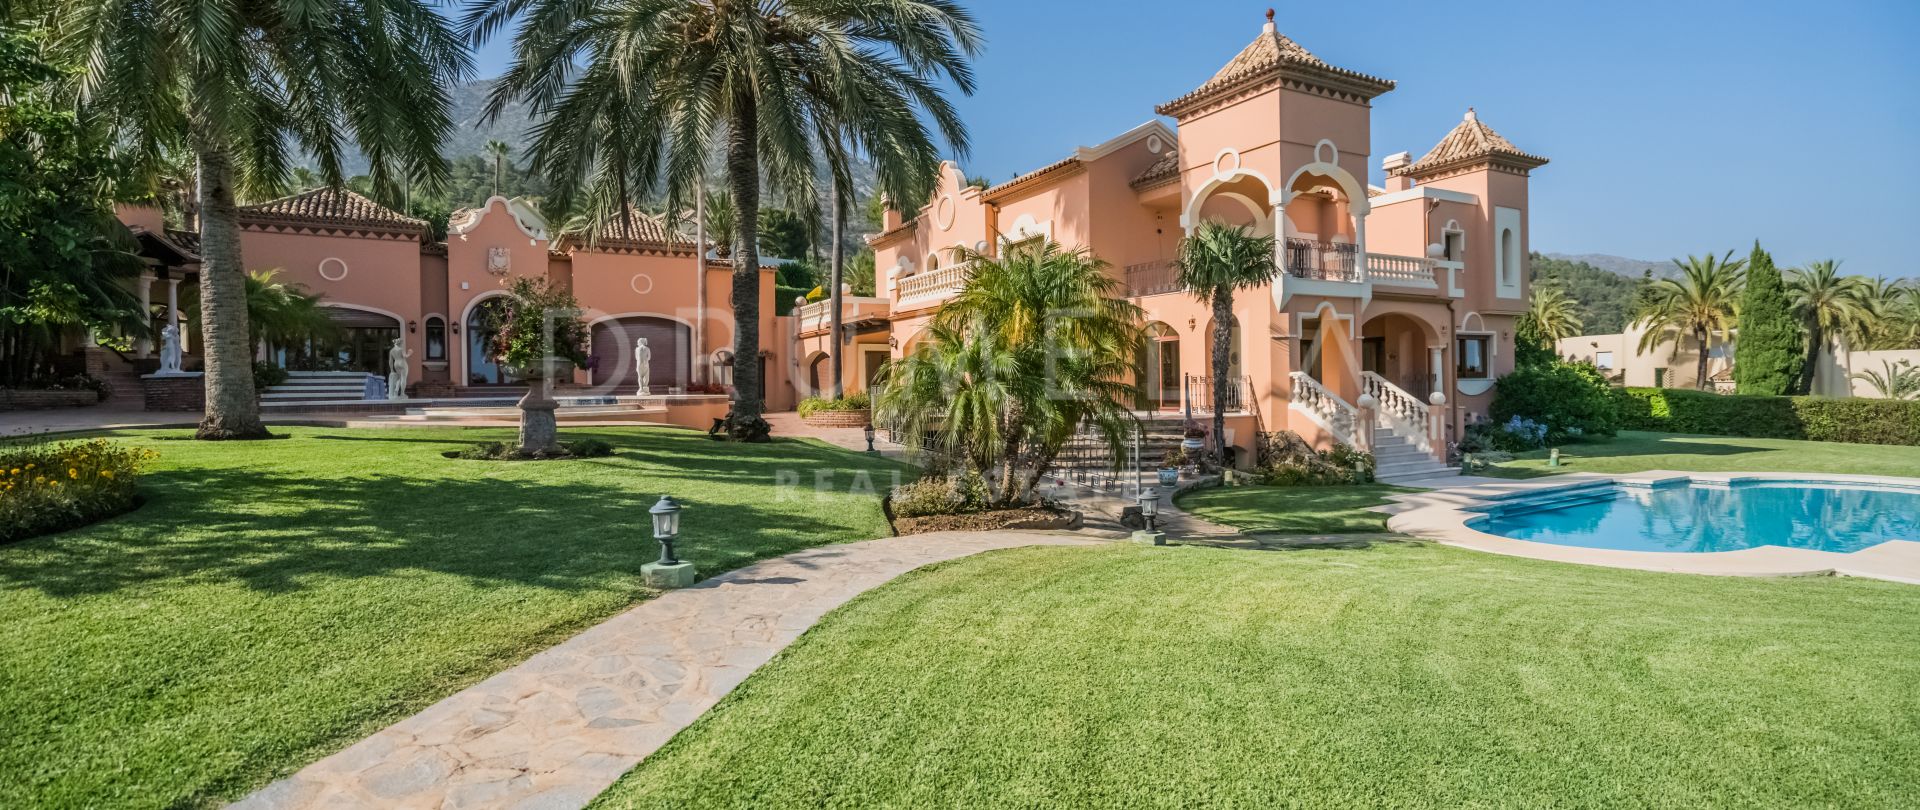 Außergewöhnliche luxuriöse mediterrane Villa, Sierra Blanca, Marbella Goldene Meile